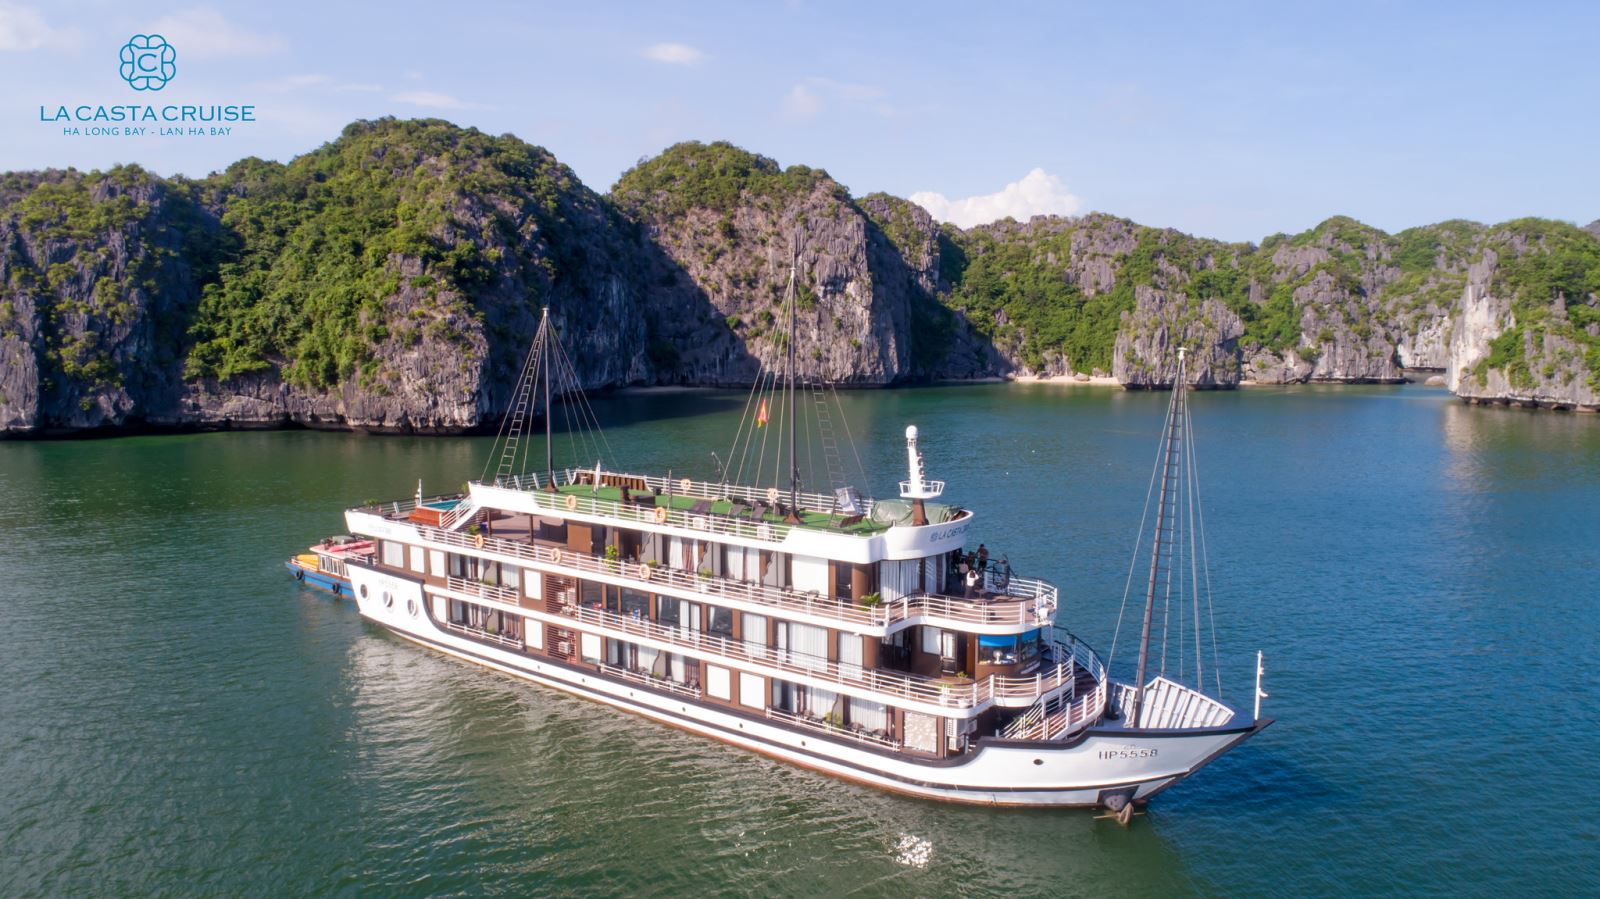 Luxury-Halong-Bay Cruise-2 days 1 night La Casta Cruise